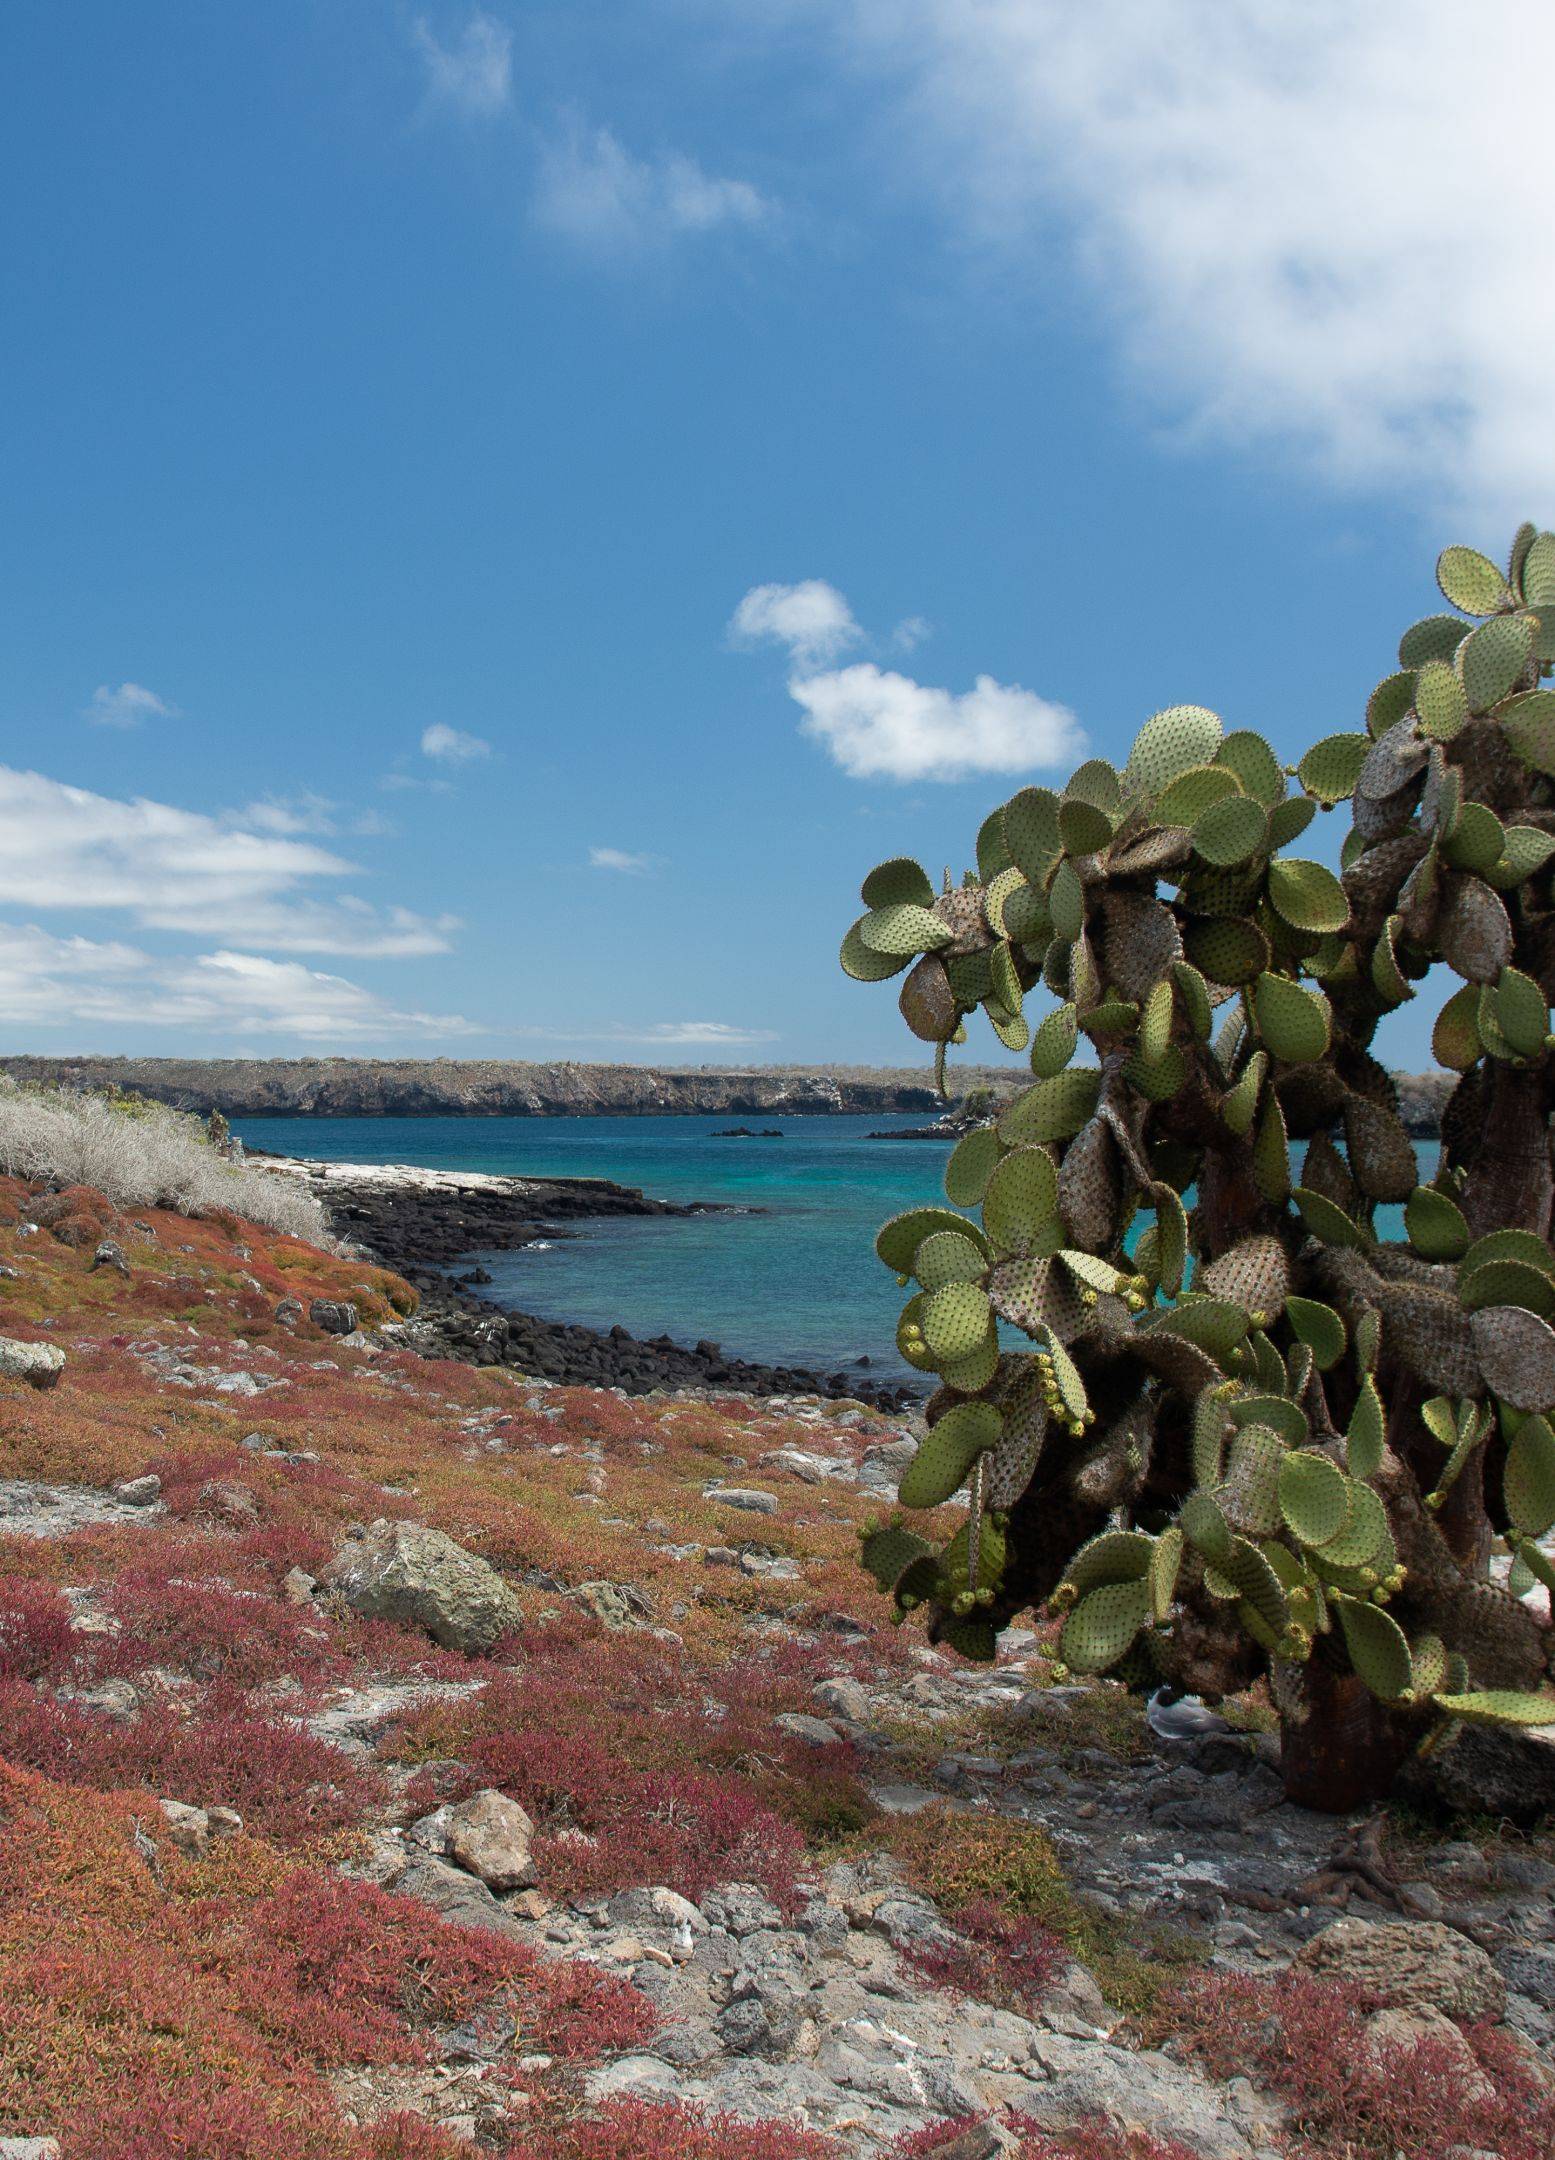 L’île de Santa Fe: iguanes et cactus géants